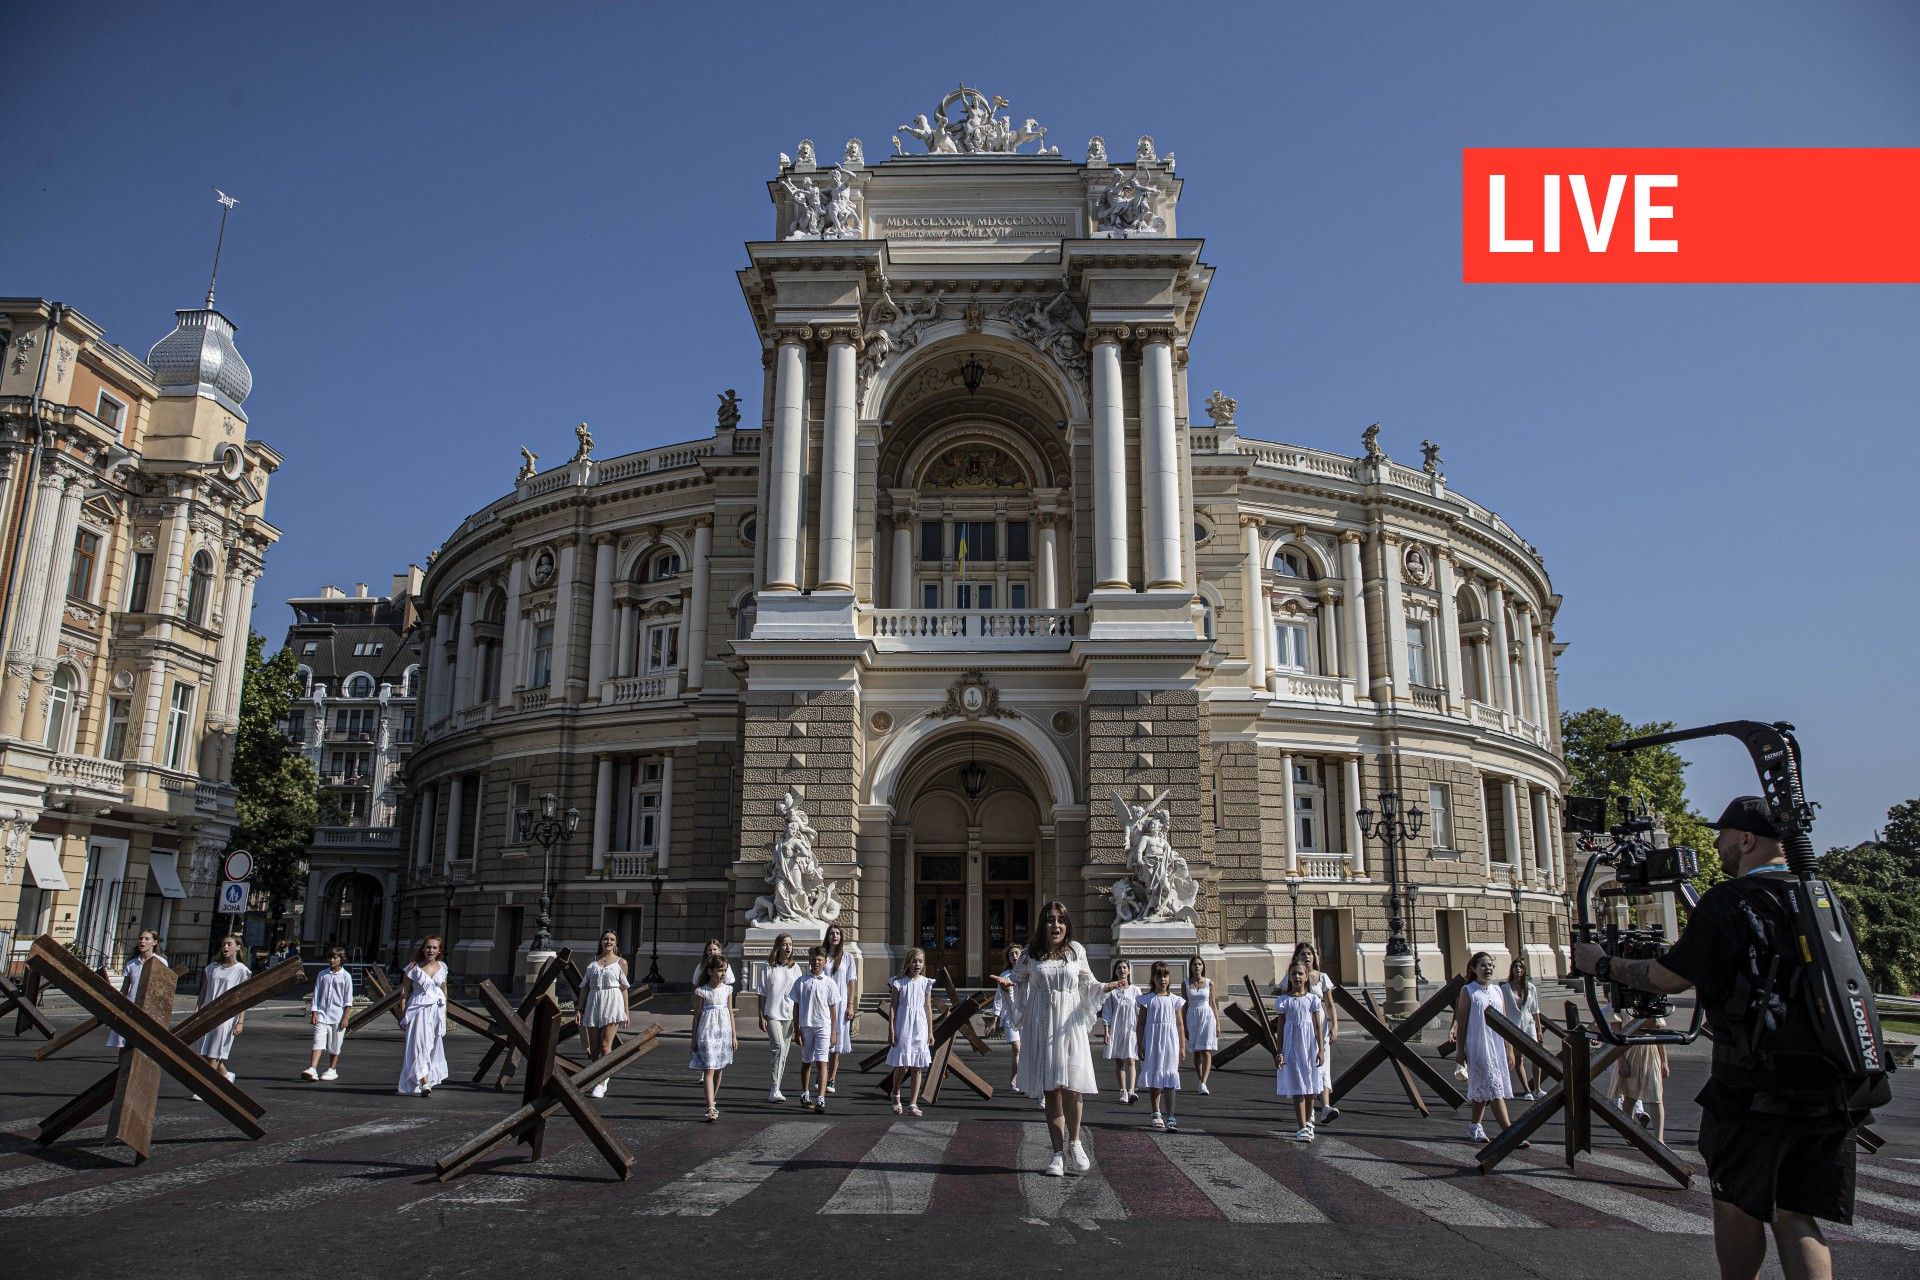 Un clip est tourné entre les barricades devant le théâtre académique national d'opéra et de ballet d'Odessa par une organisation non gouvernementale pour attirer l'attention sur la guerre en cours entre la Russie et l'Ukraine à l'occasion du 24 août, jour